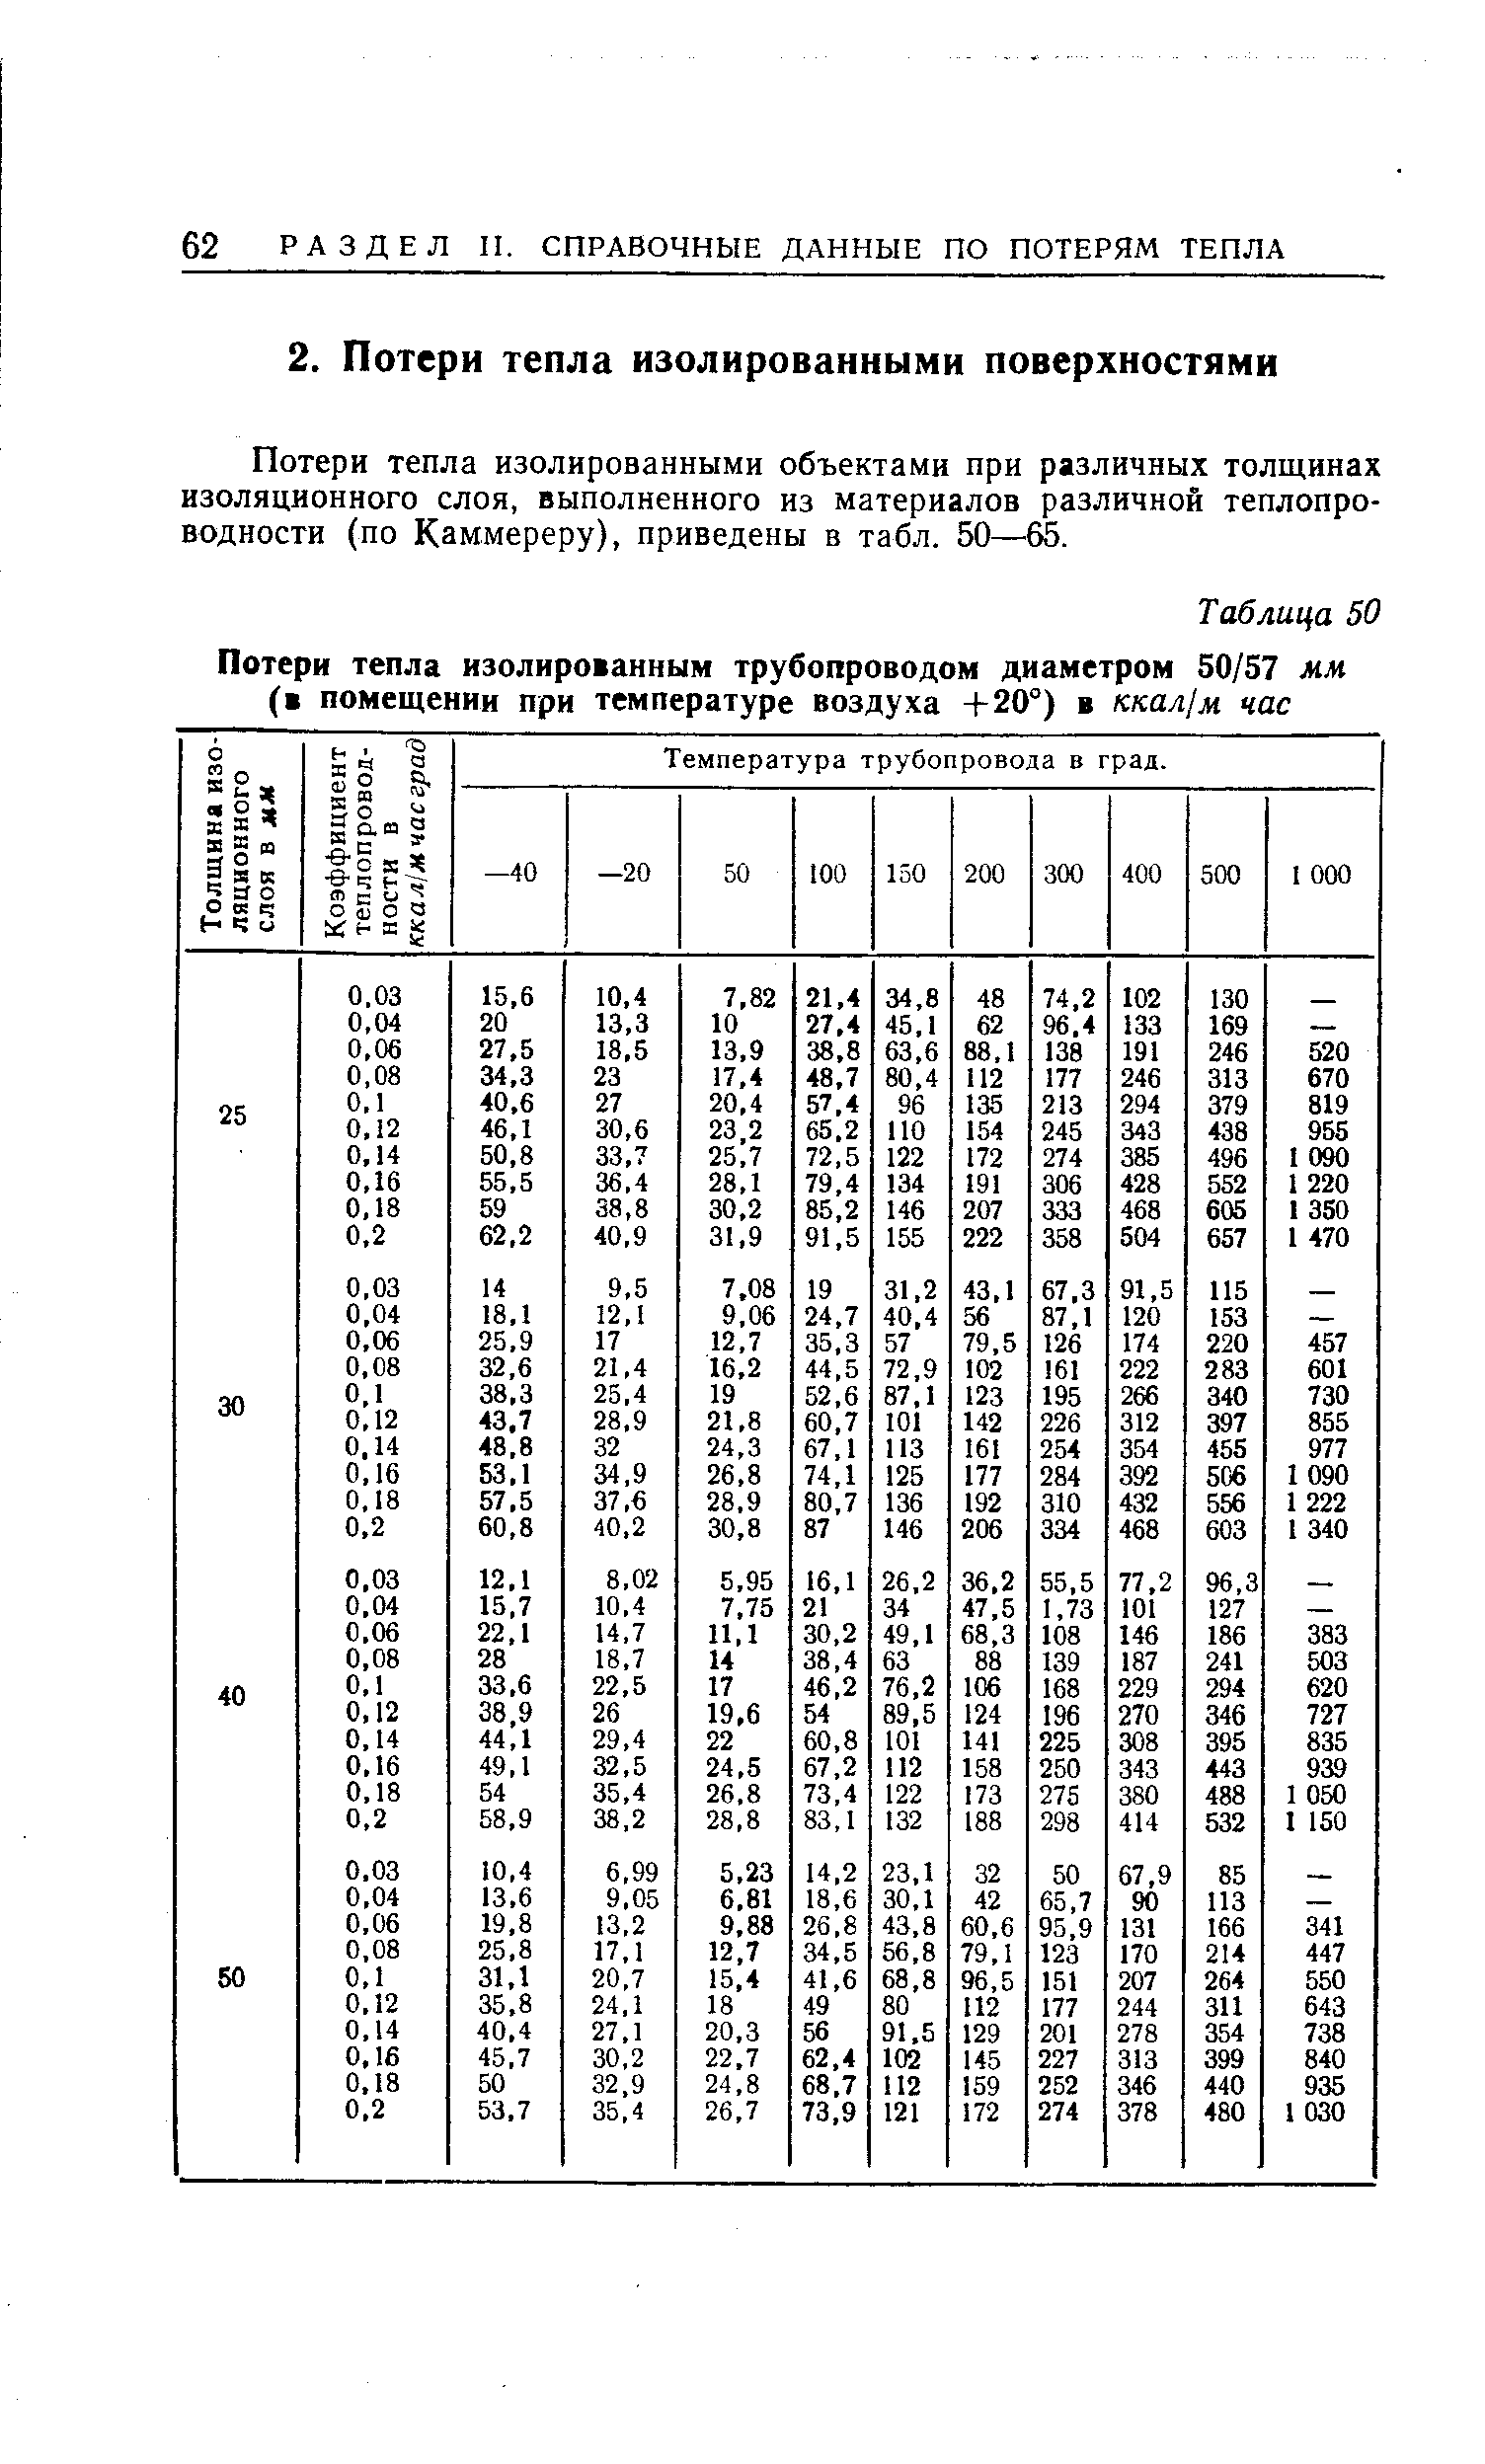 Потери тепла изолированными объектами при различных толщинах изоляционного слоя, выполненного из материалов различной теплопроводности (по Каммереру), приведены в табл. 50—65.
